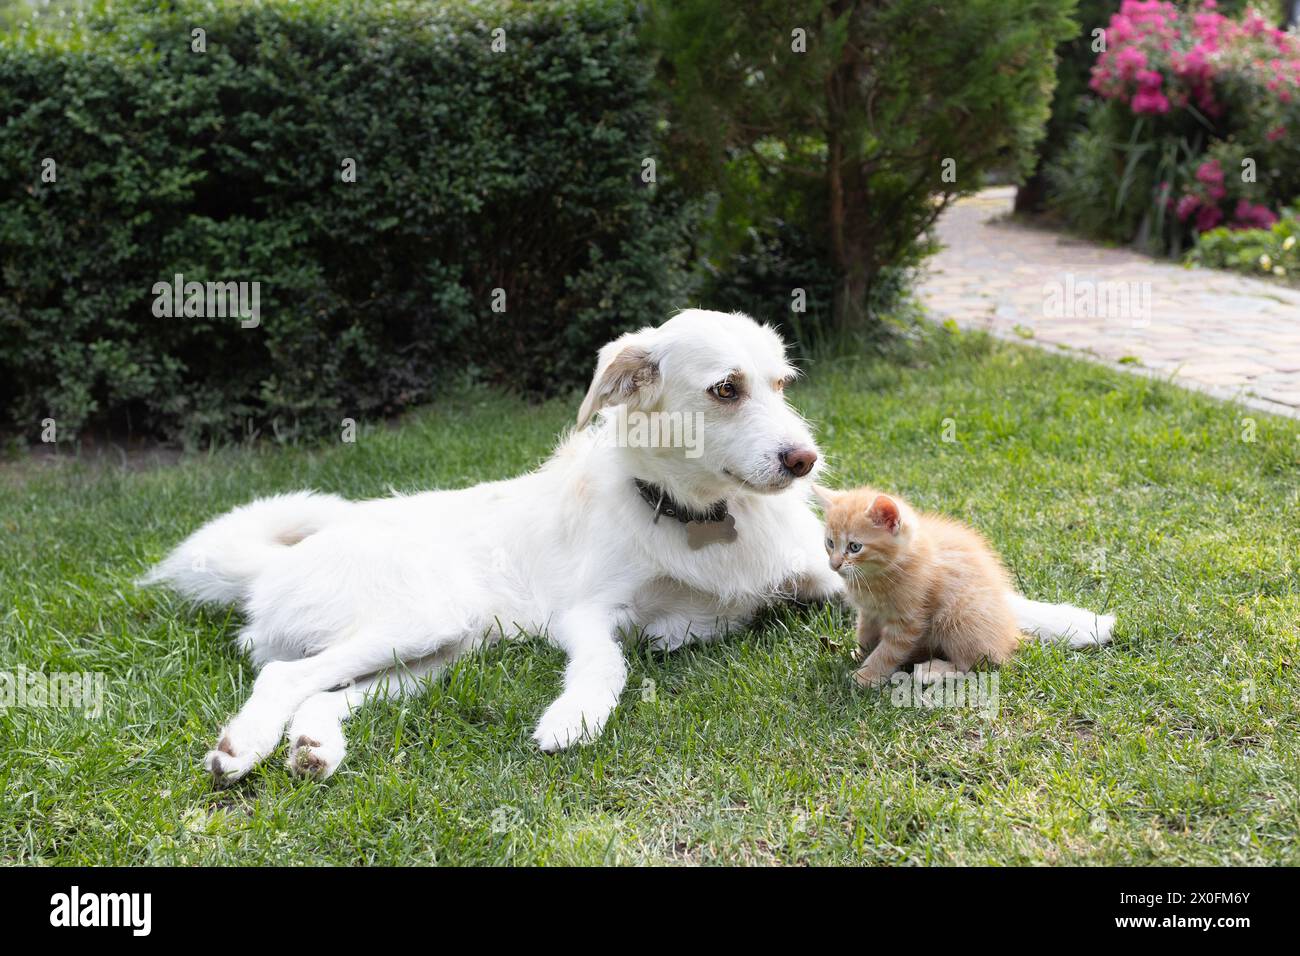 un grande cane bianco giace sull'erba, un piccolo gattino rosso si siede accanto a lui. Incontro amichevole di animali domestici, buoni rapporti tra animali, vivere insieme. Foto Stock